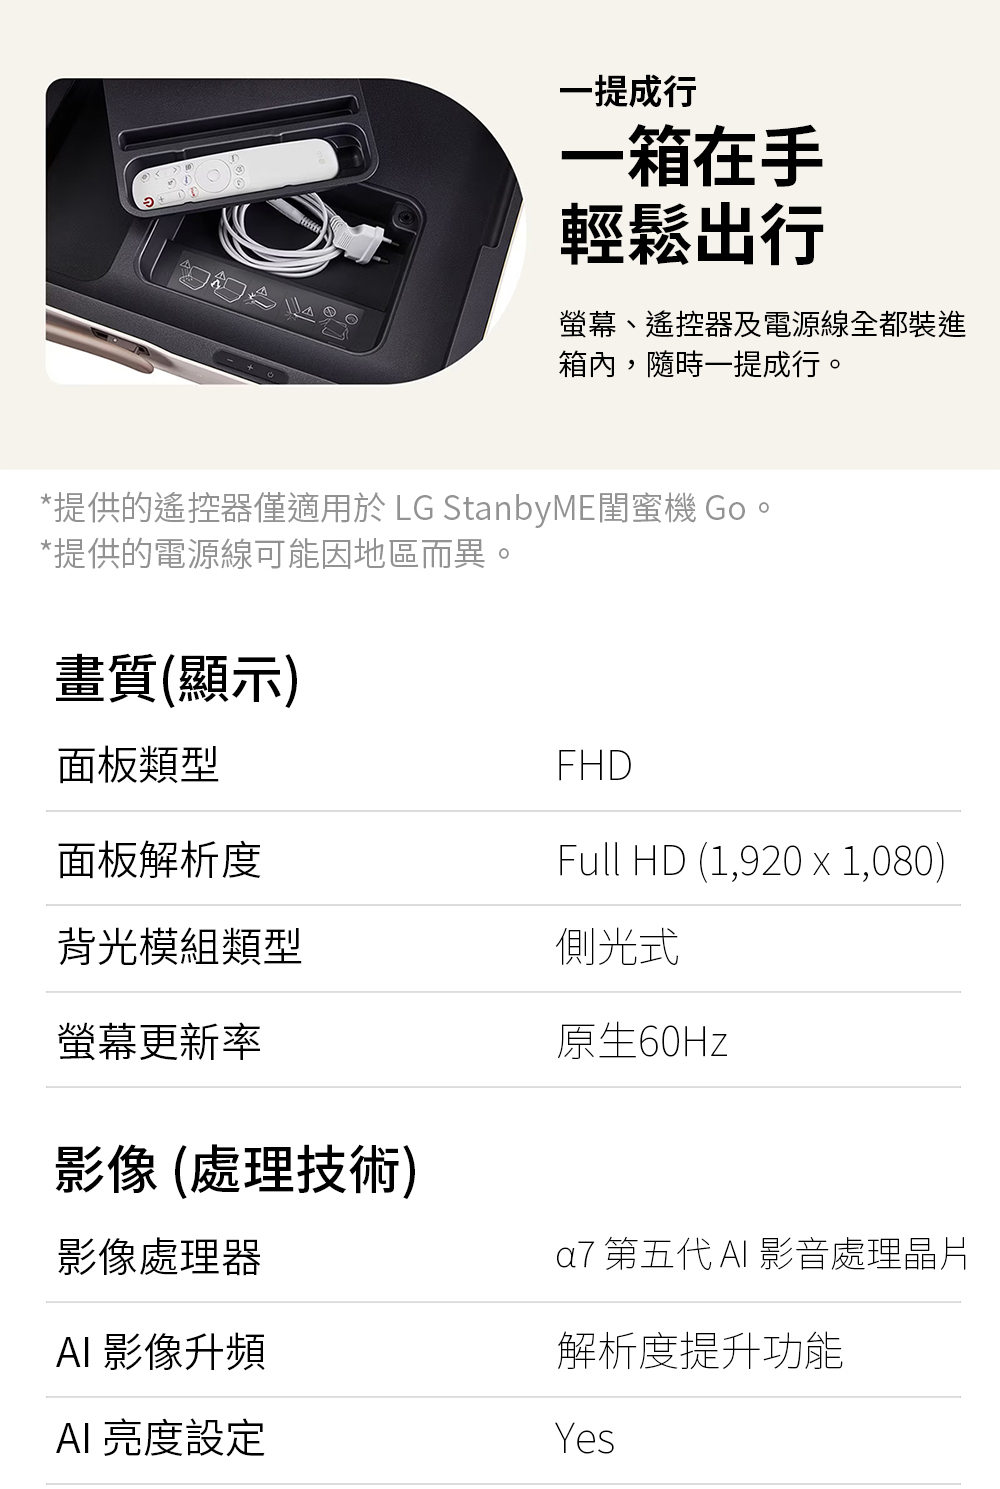 提供的遙控器僅適用於 LG StanbyME閨蜜機 Go。